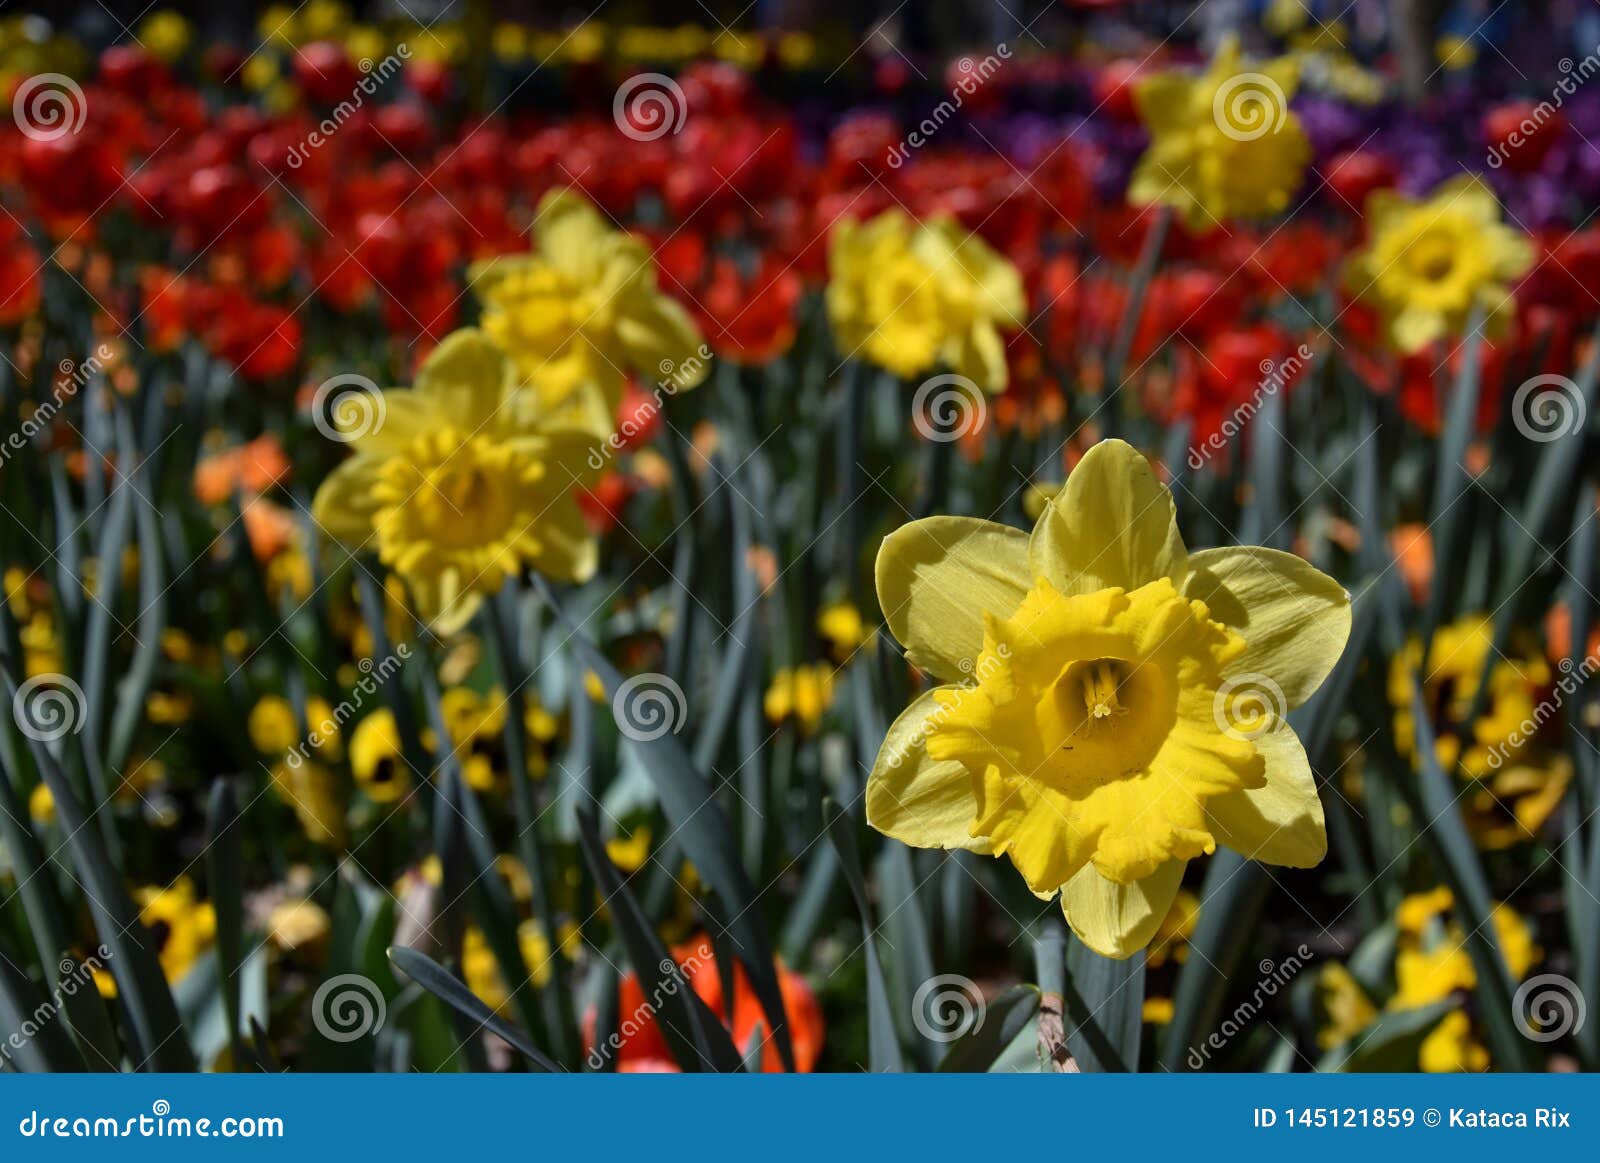 Vue à Une Jonquille Jaune Narcissus Flower Au Printemps Image stock - Image  du frais, ornemental: 145121859